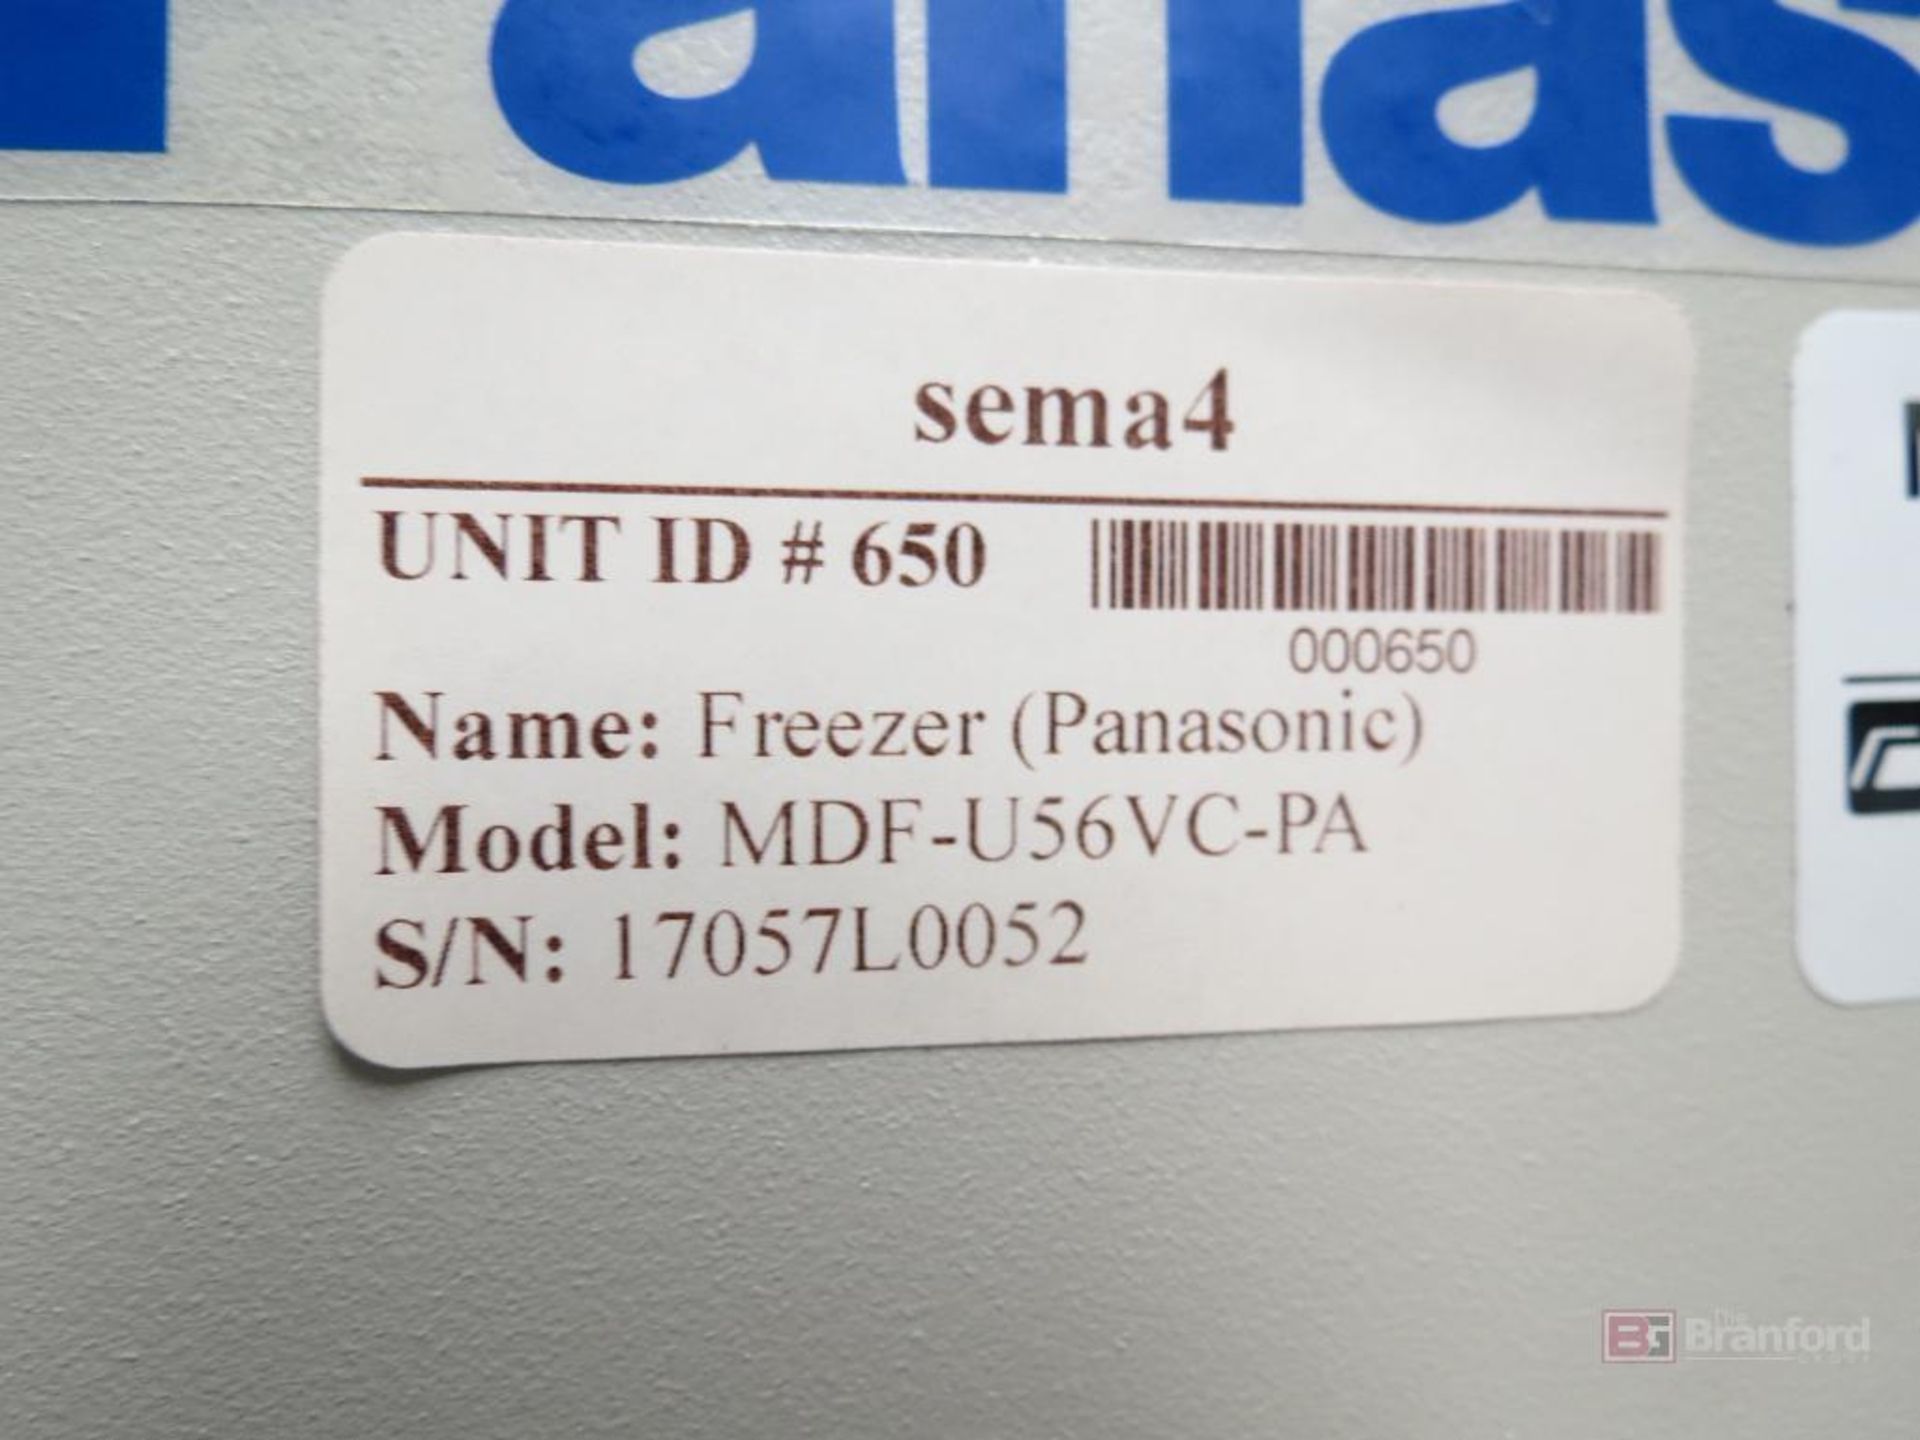 Panasonic MDF-U56VC-PA -86°C Ultra Low Freezer - Image 2 of 4